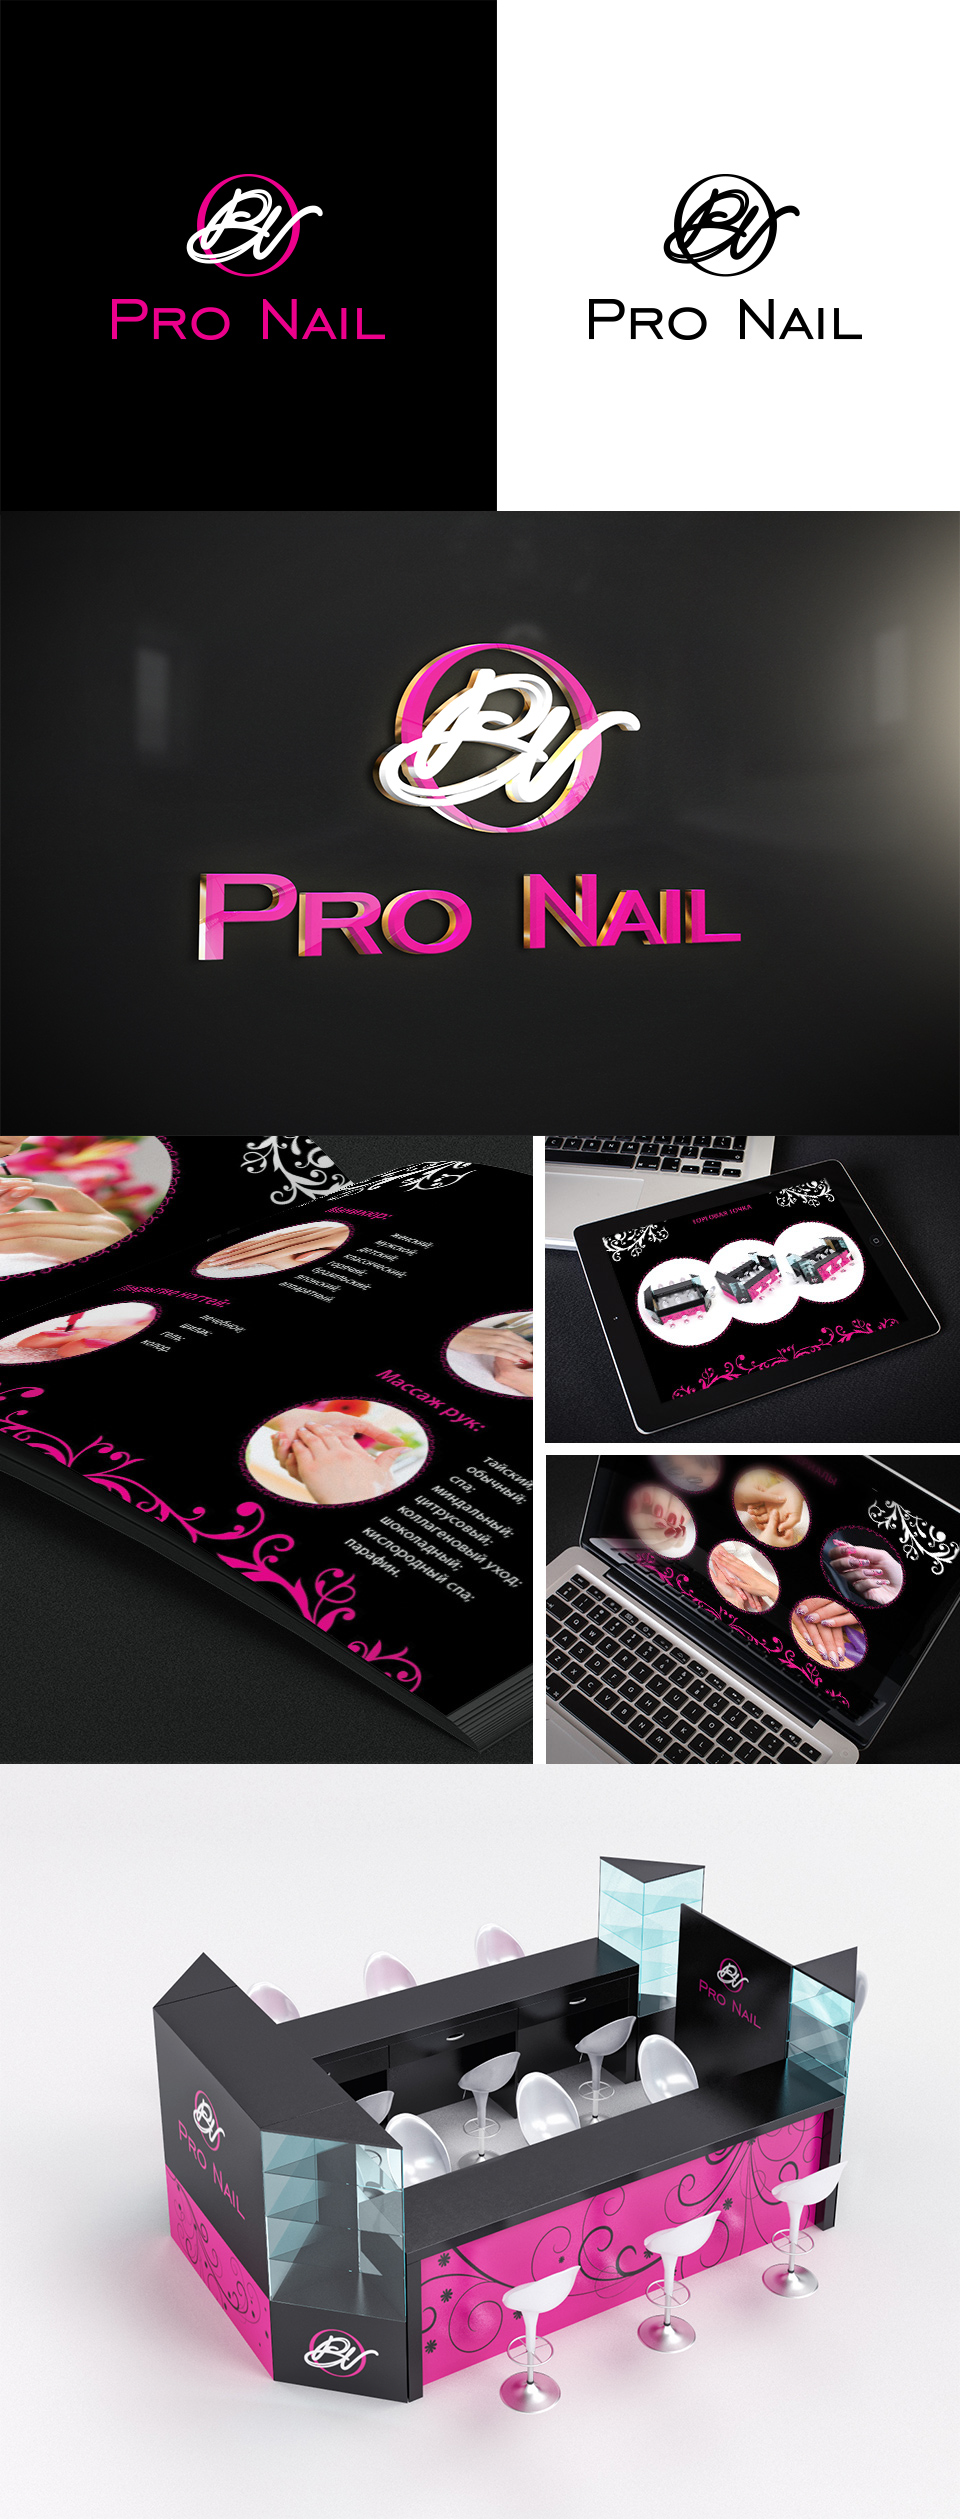 Логотип нейл бара, ногтевой студии (Nail bar) на разном фоне, печатной продукции, для сайта